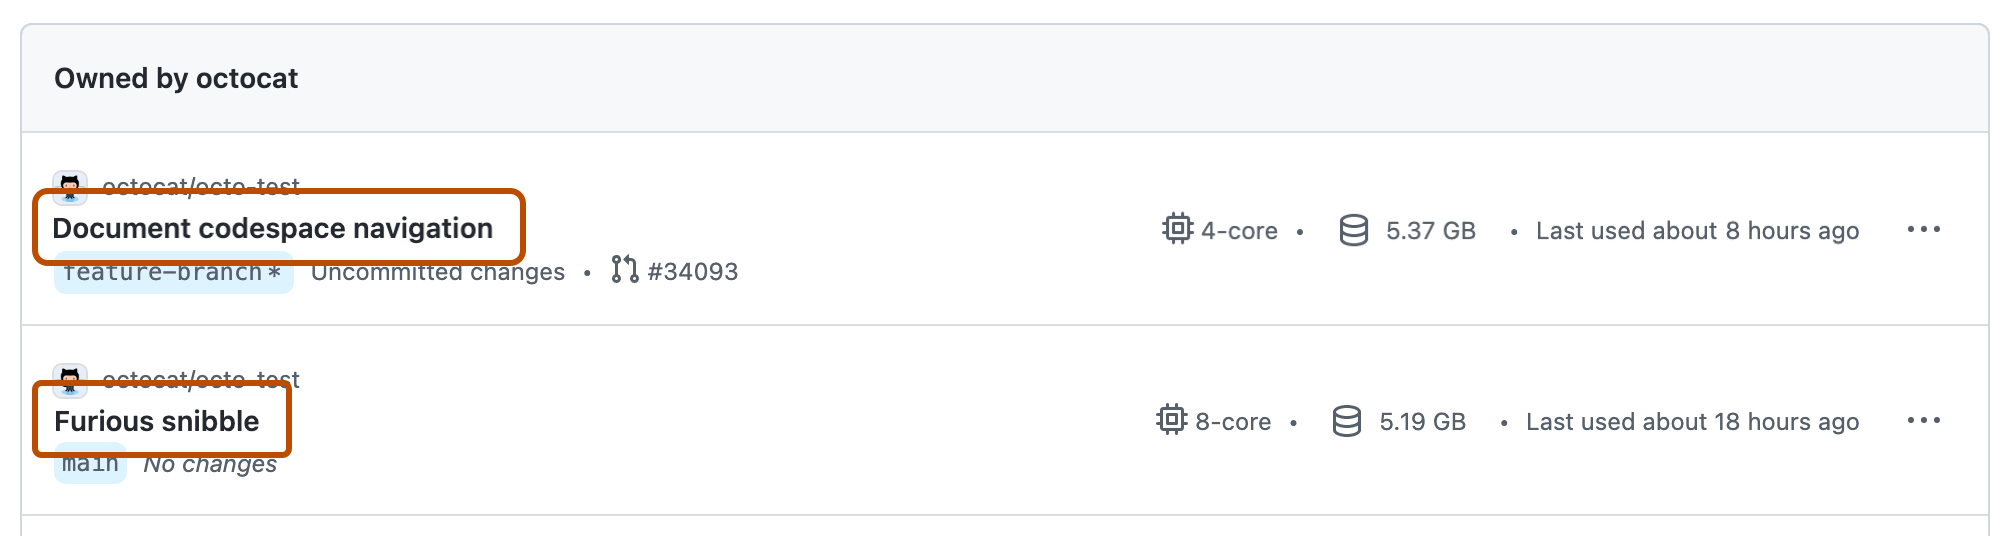 Capture d’écran d’une liste de deux codespaces sur GitHub. Les noms des codespaces sont mis en surbrillance avec des contours orange foncé.